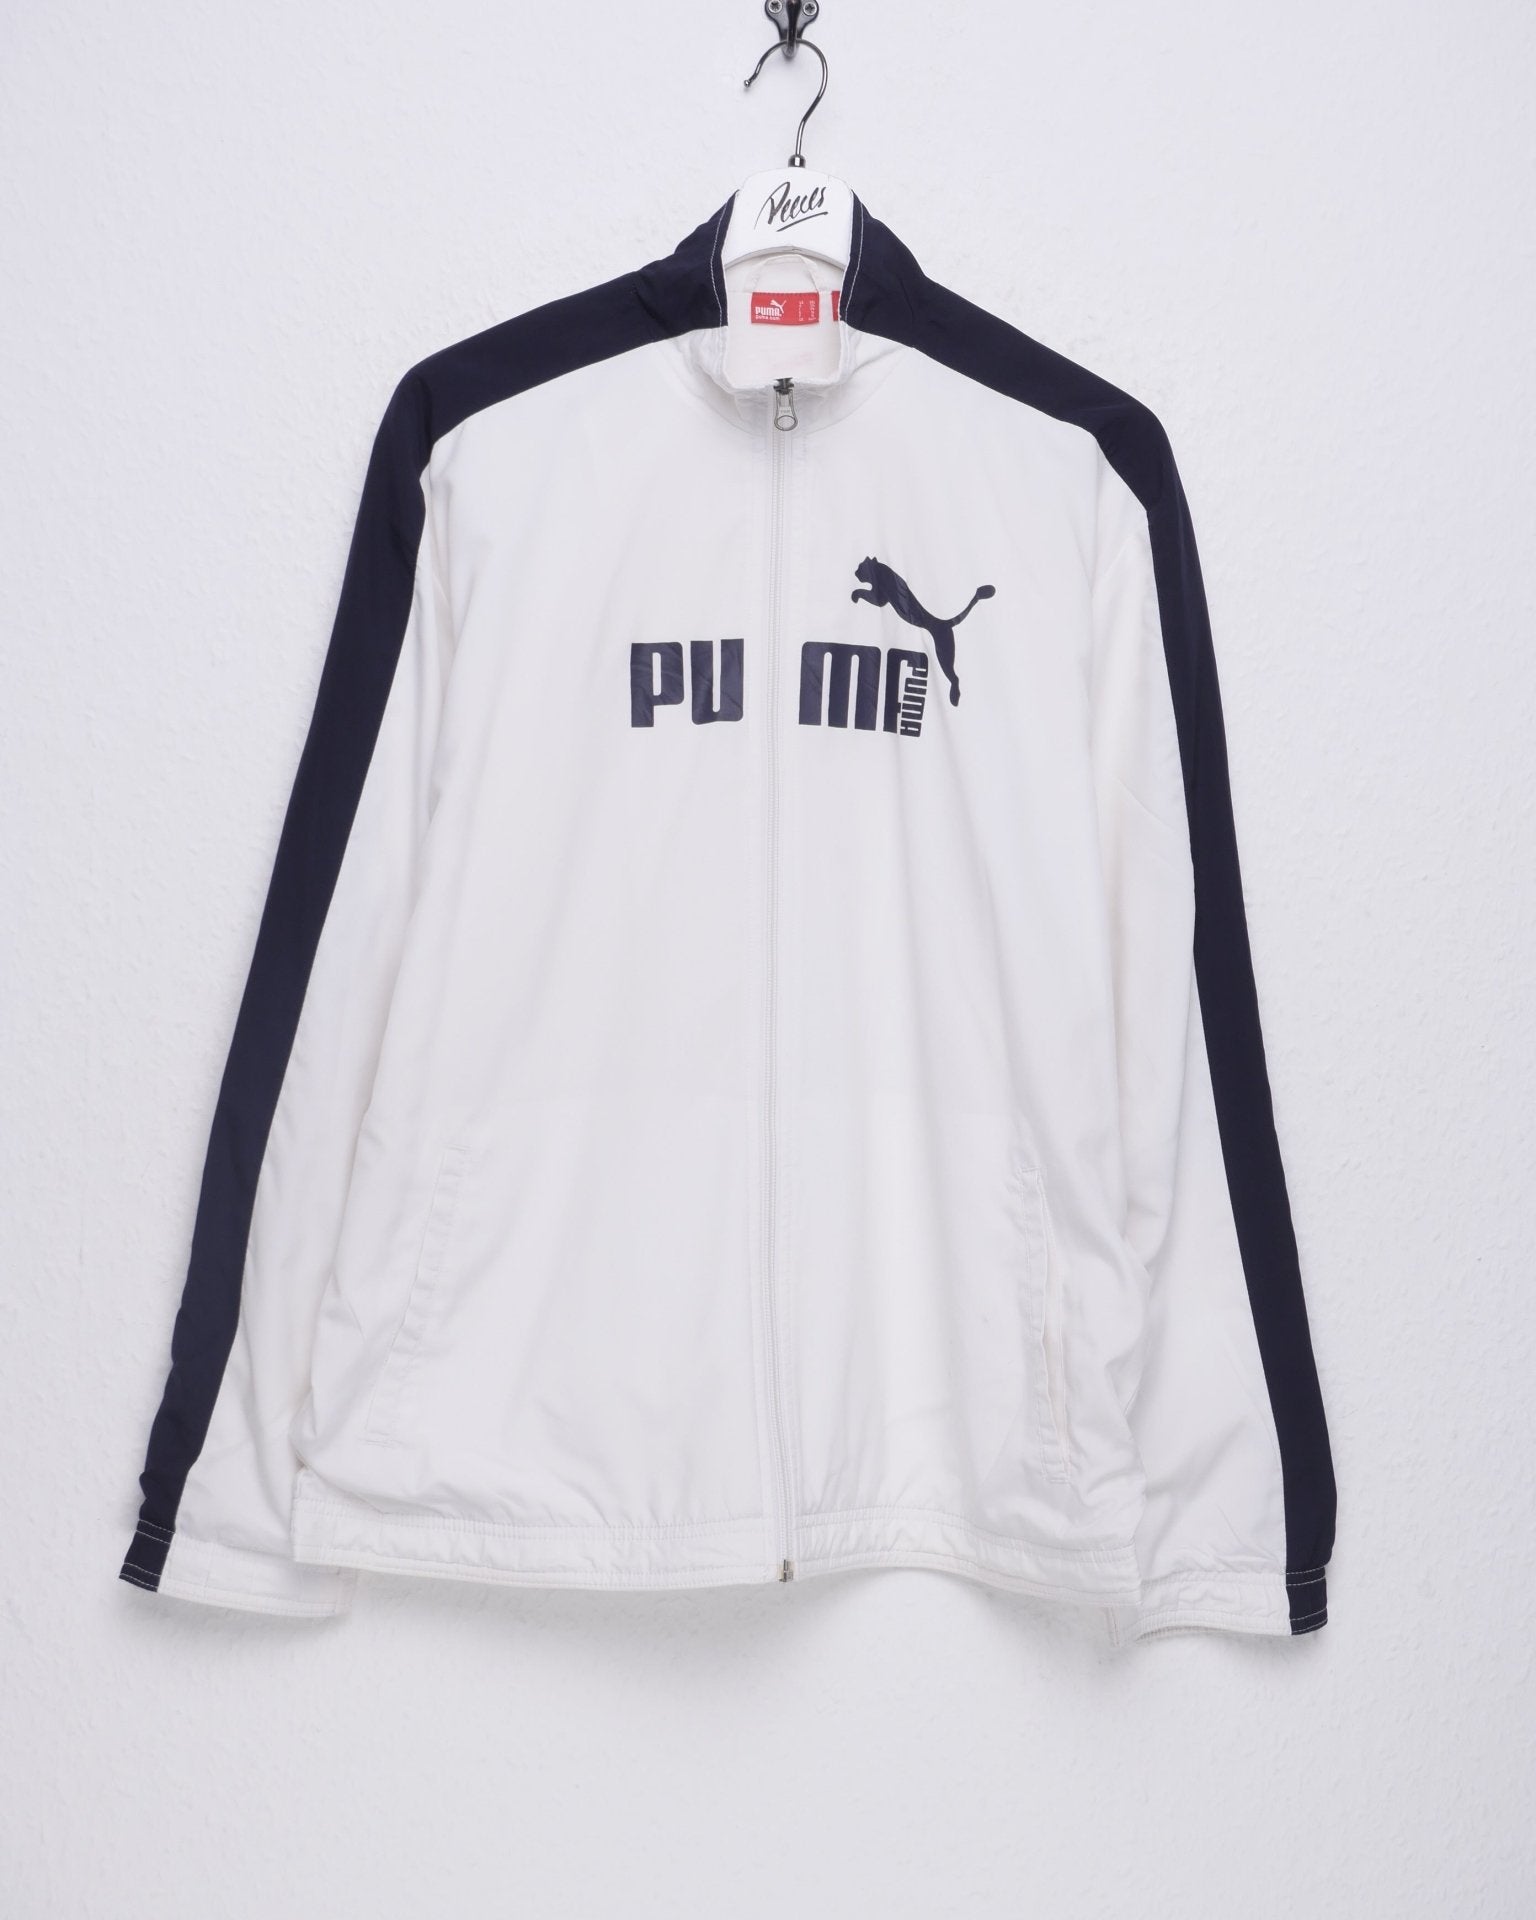 Puma embroidered Logo Vintage Track Jacke - Peeces